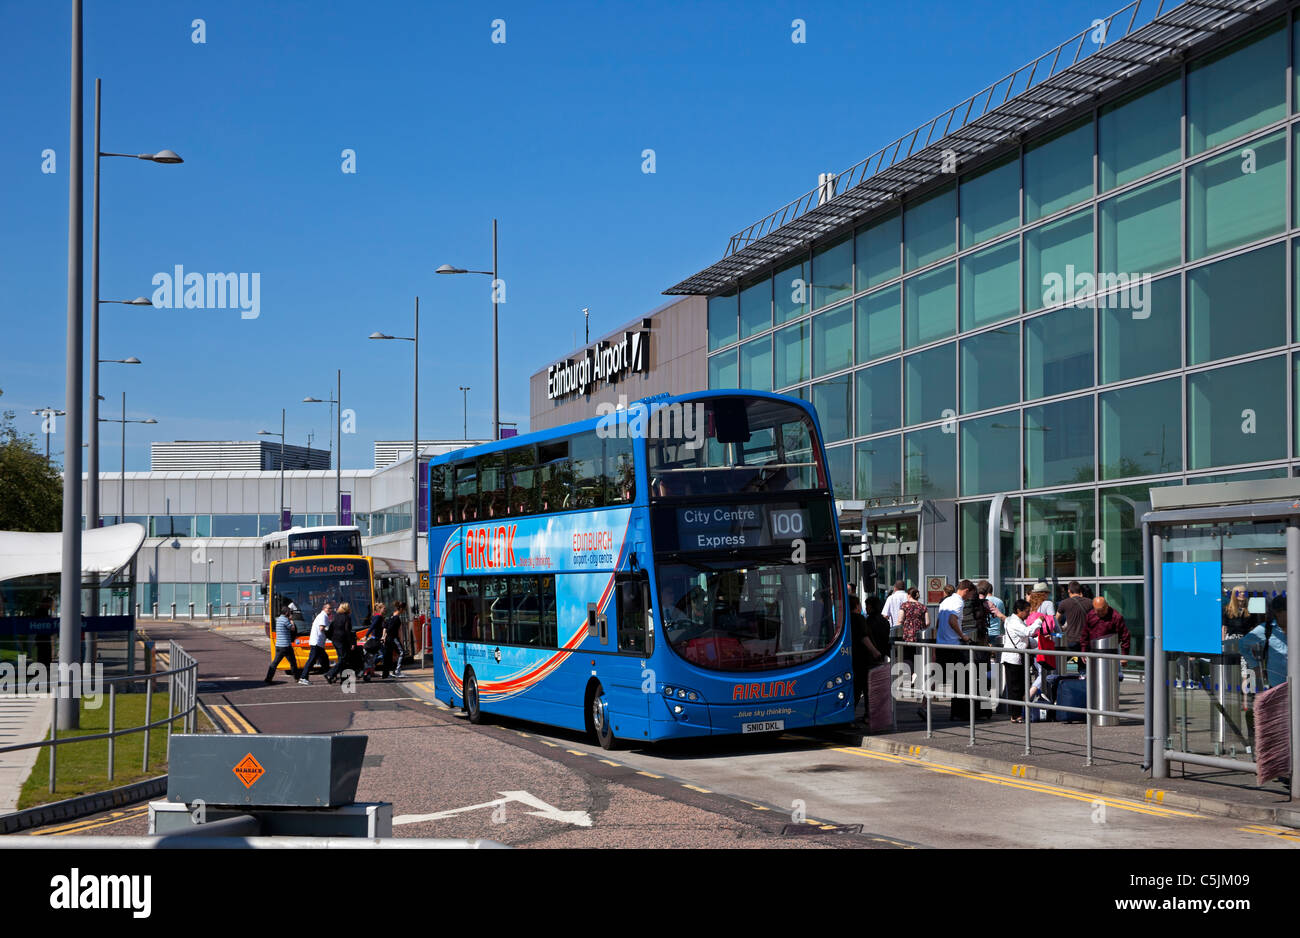 L'aéroport d'Édimbourg les passagers de descendre du bus Ecosse UK Europe Banque D'Images